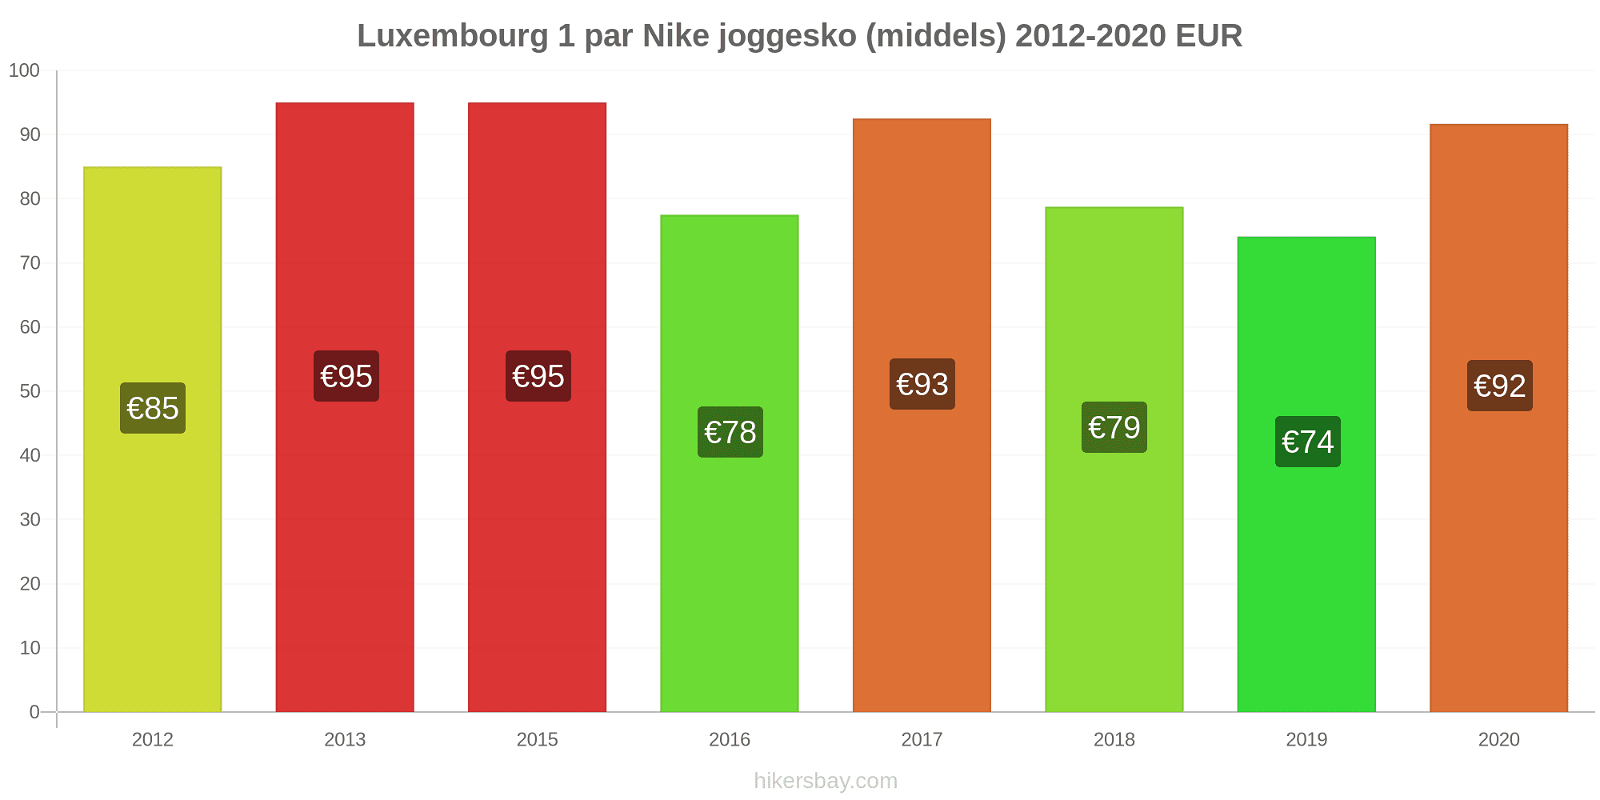 Luxembourg prisendringer 1 par Nike joggesko (middels) hikersbay.com